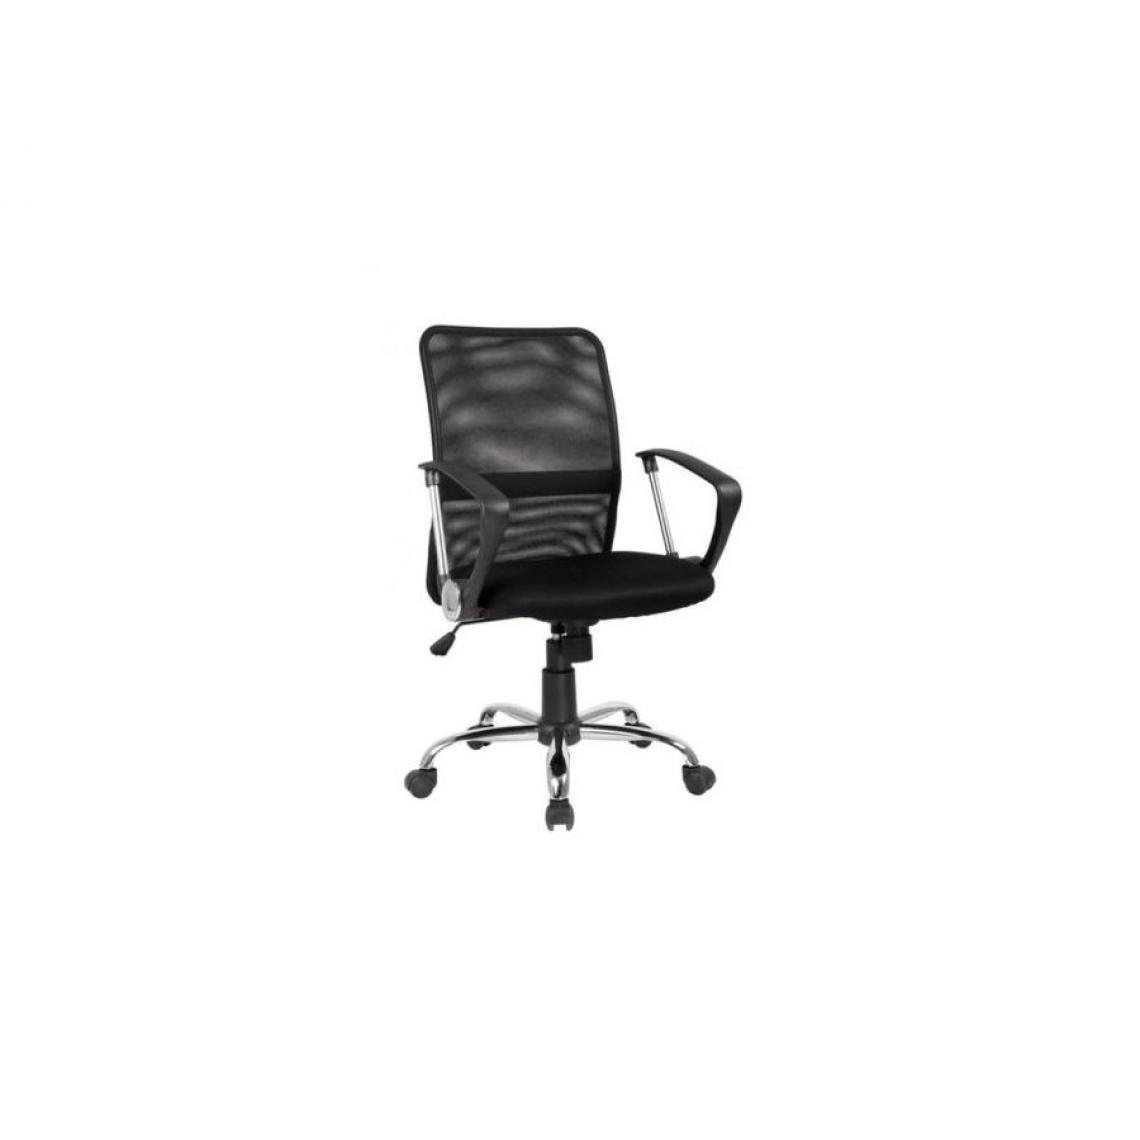 Hucoco - TREO | Chaise confortable avec assise pivotante | Hauteur 92-102 cm | Revêtement tissu et maille aérée | Fonction TILT - Noir - Chaises